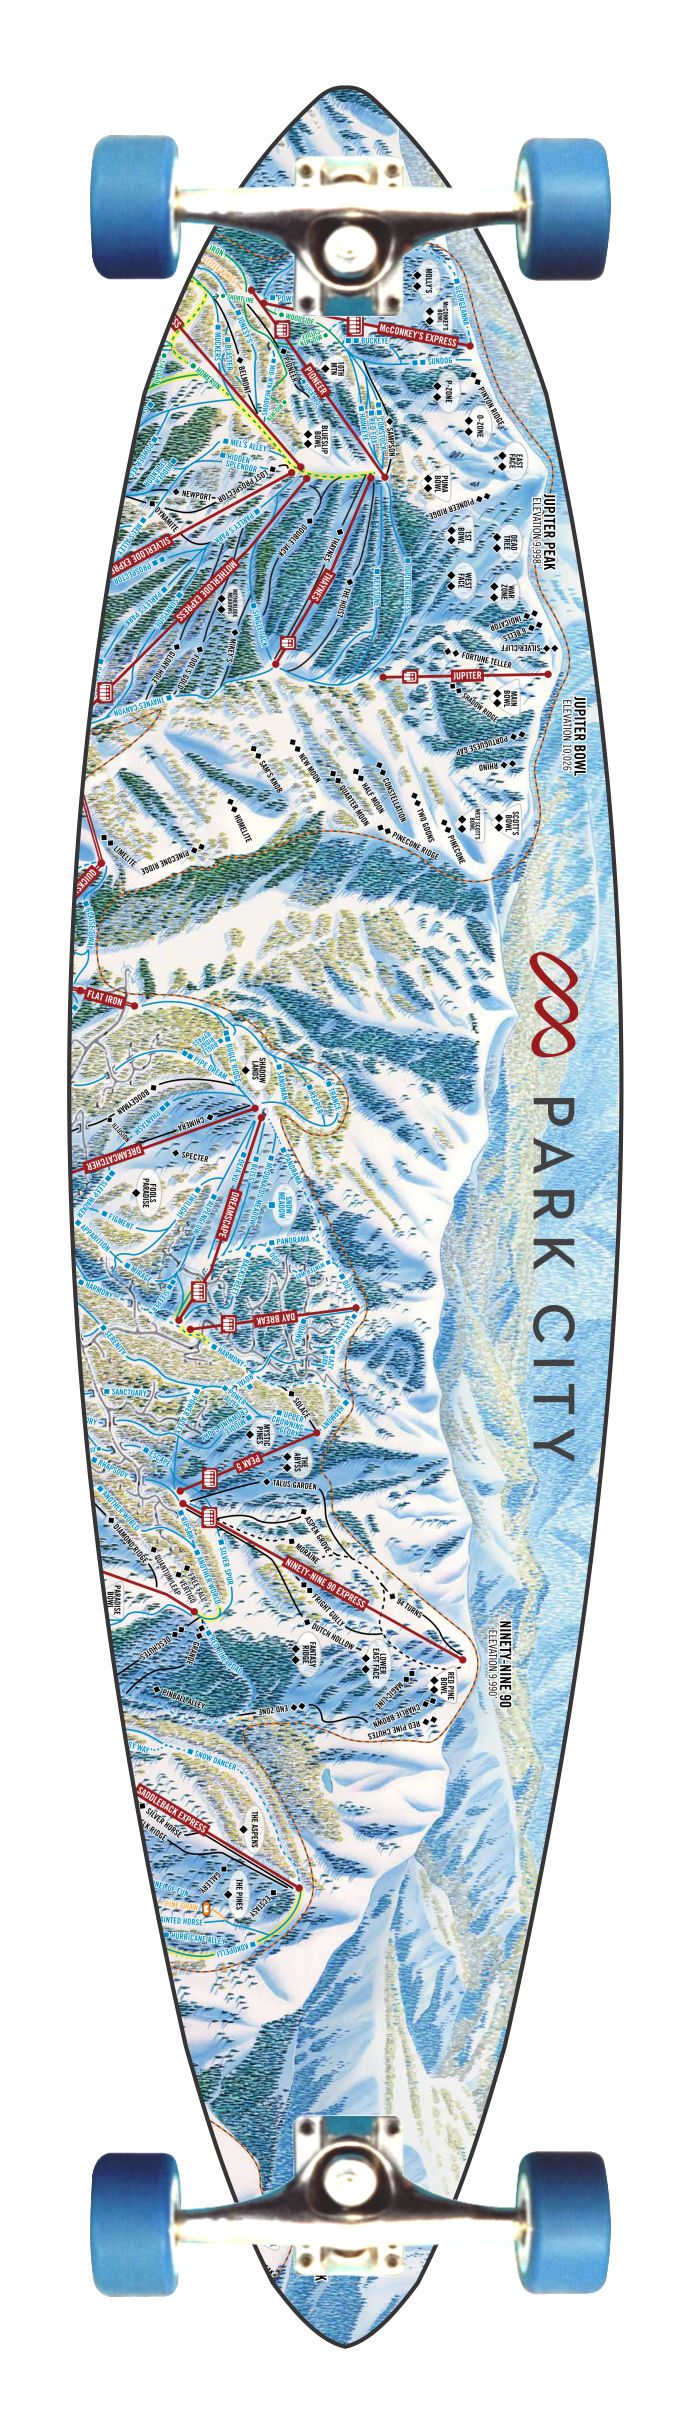 Ski Map Longboard.jpg